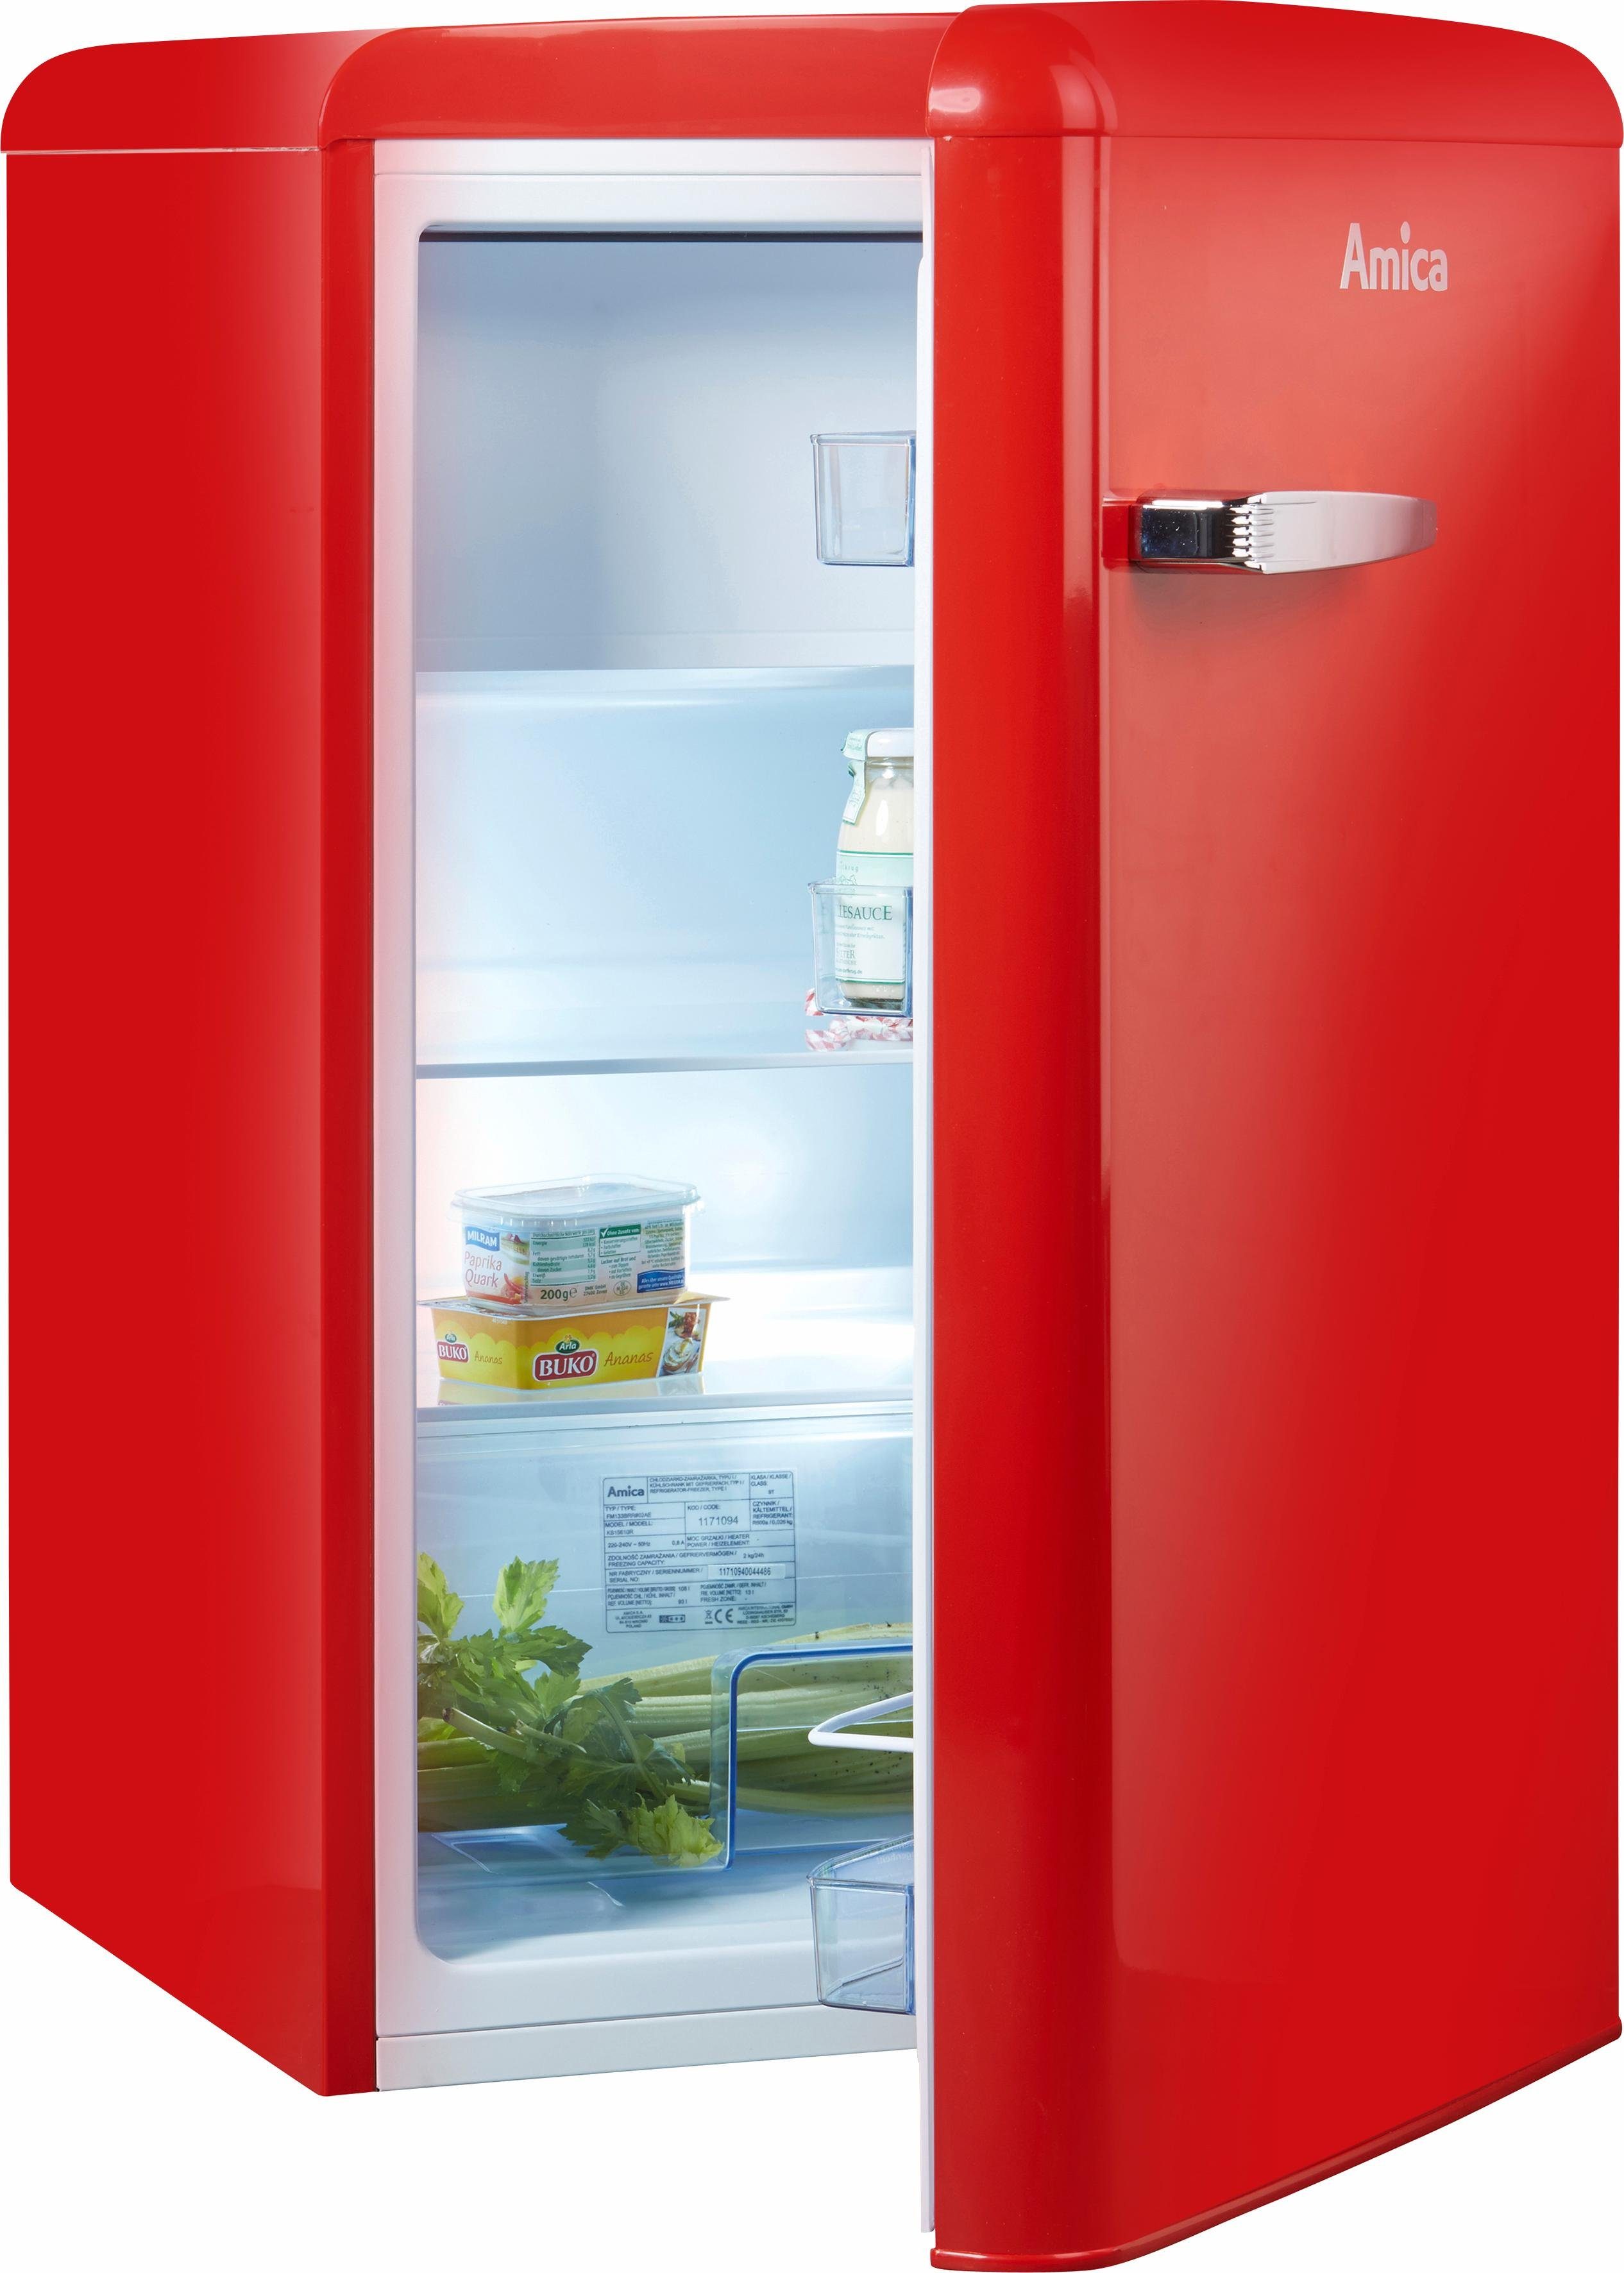 Amica Vollraum Kühlschrank Rot 122 L 86cm hoch Retro Design Stand Kühlschrank 